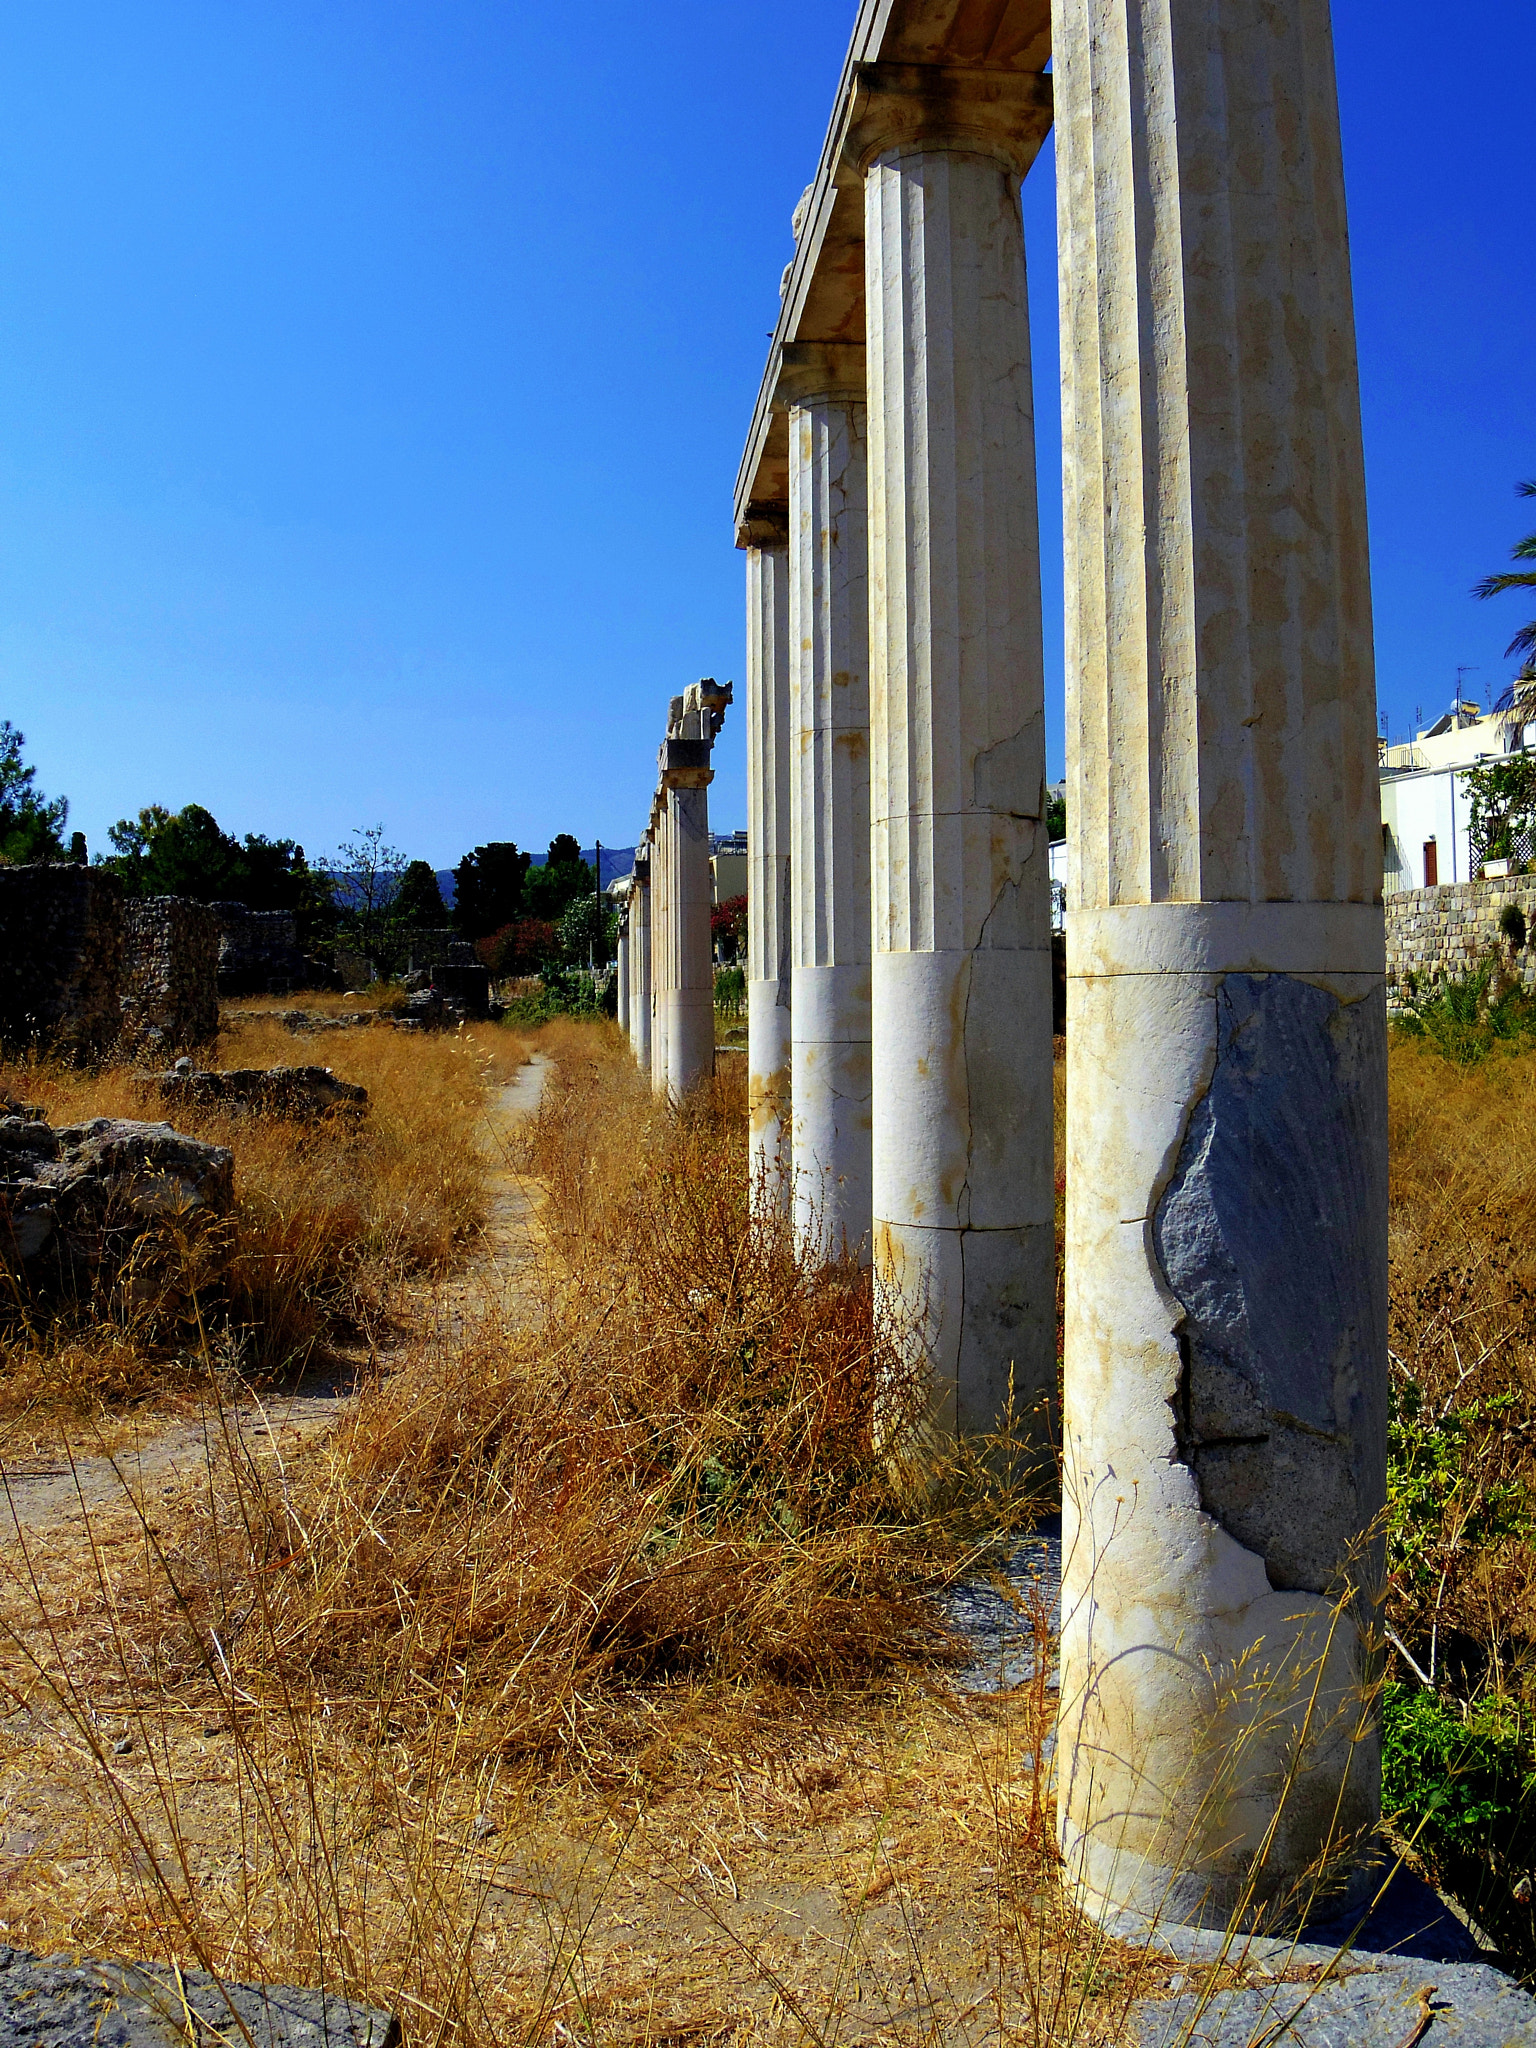 Pentax Q sample photo. Ancient ruins at kos photography